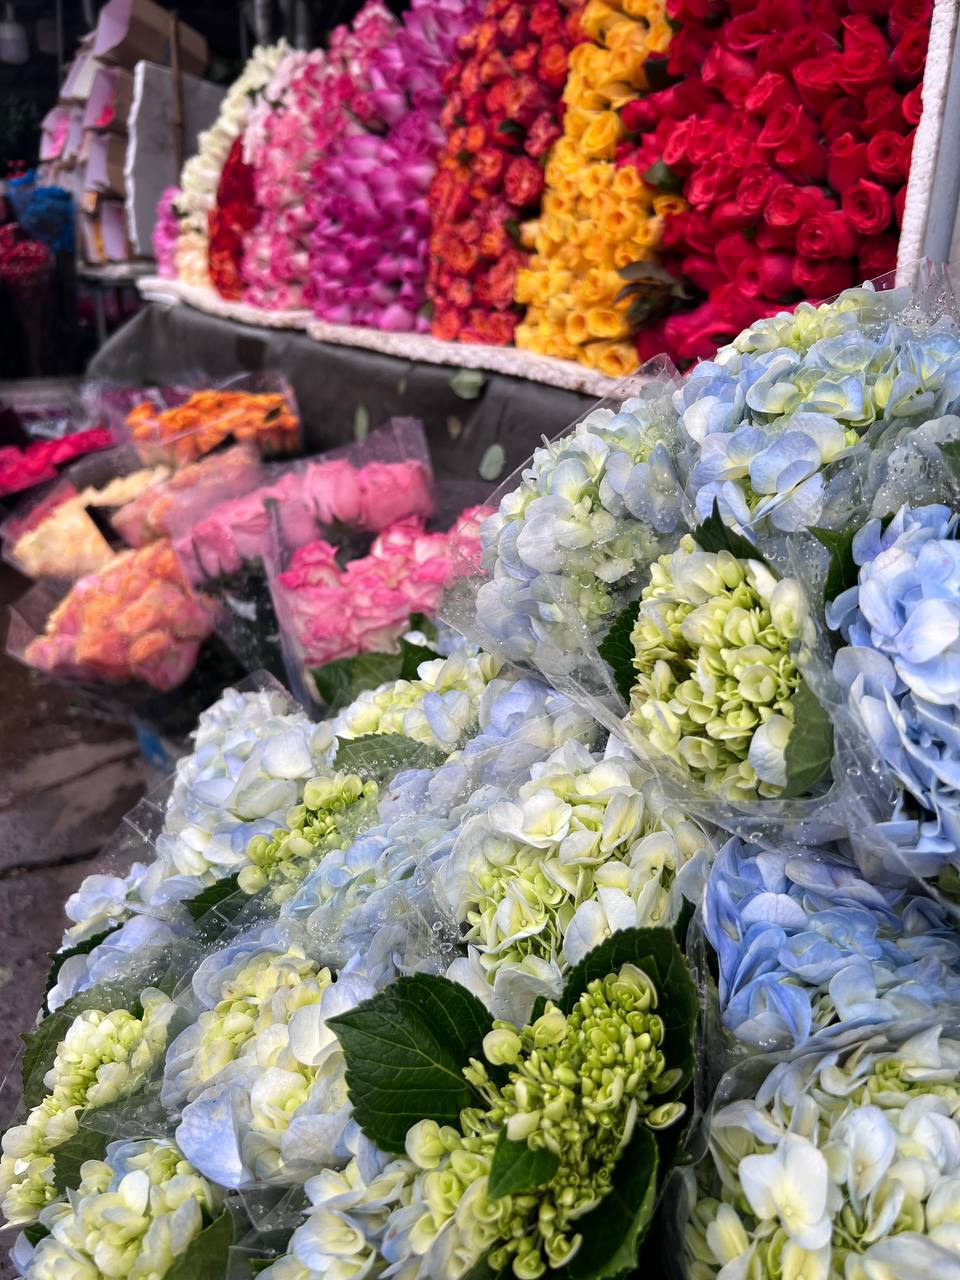 Mách bạn bí kíp mua hoa chợ Quảng Bá giá rẻ mà vẫn đẹp - Ảnh 3.